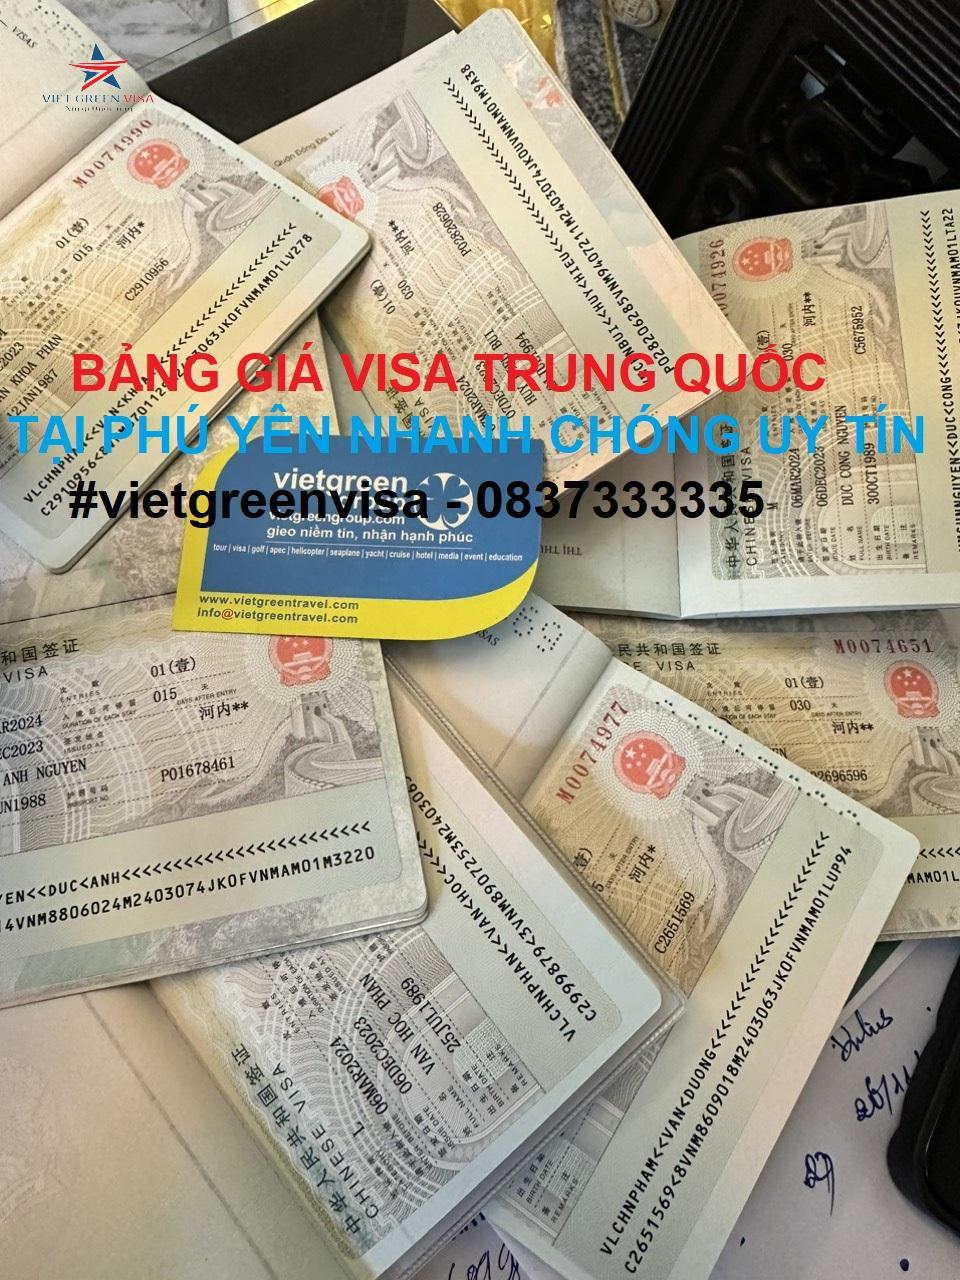 Dịch vụ xin visa Trung Quốc tại Phú Yên chuyên nghiệp